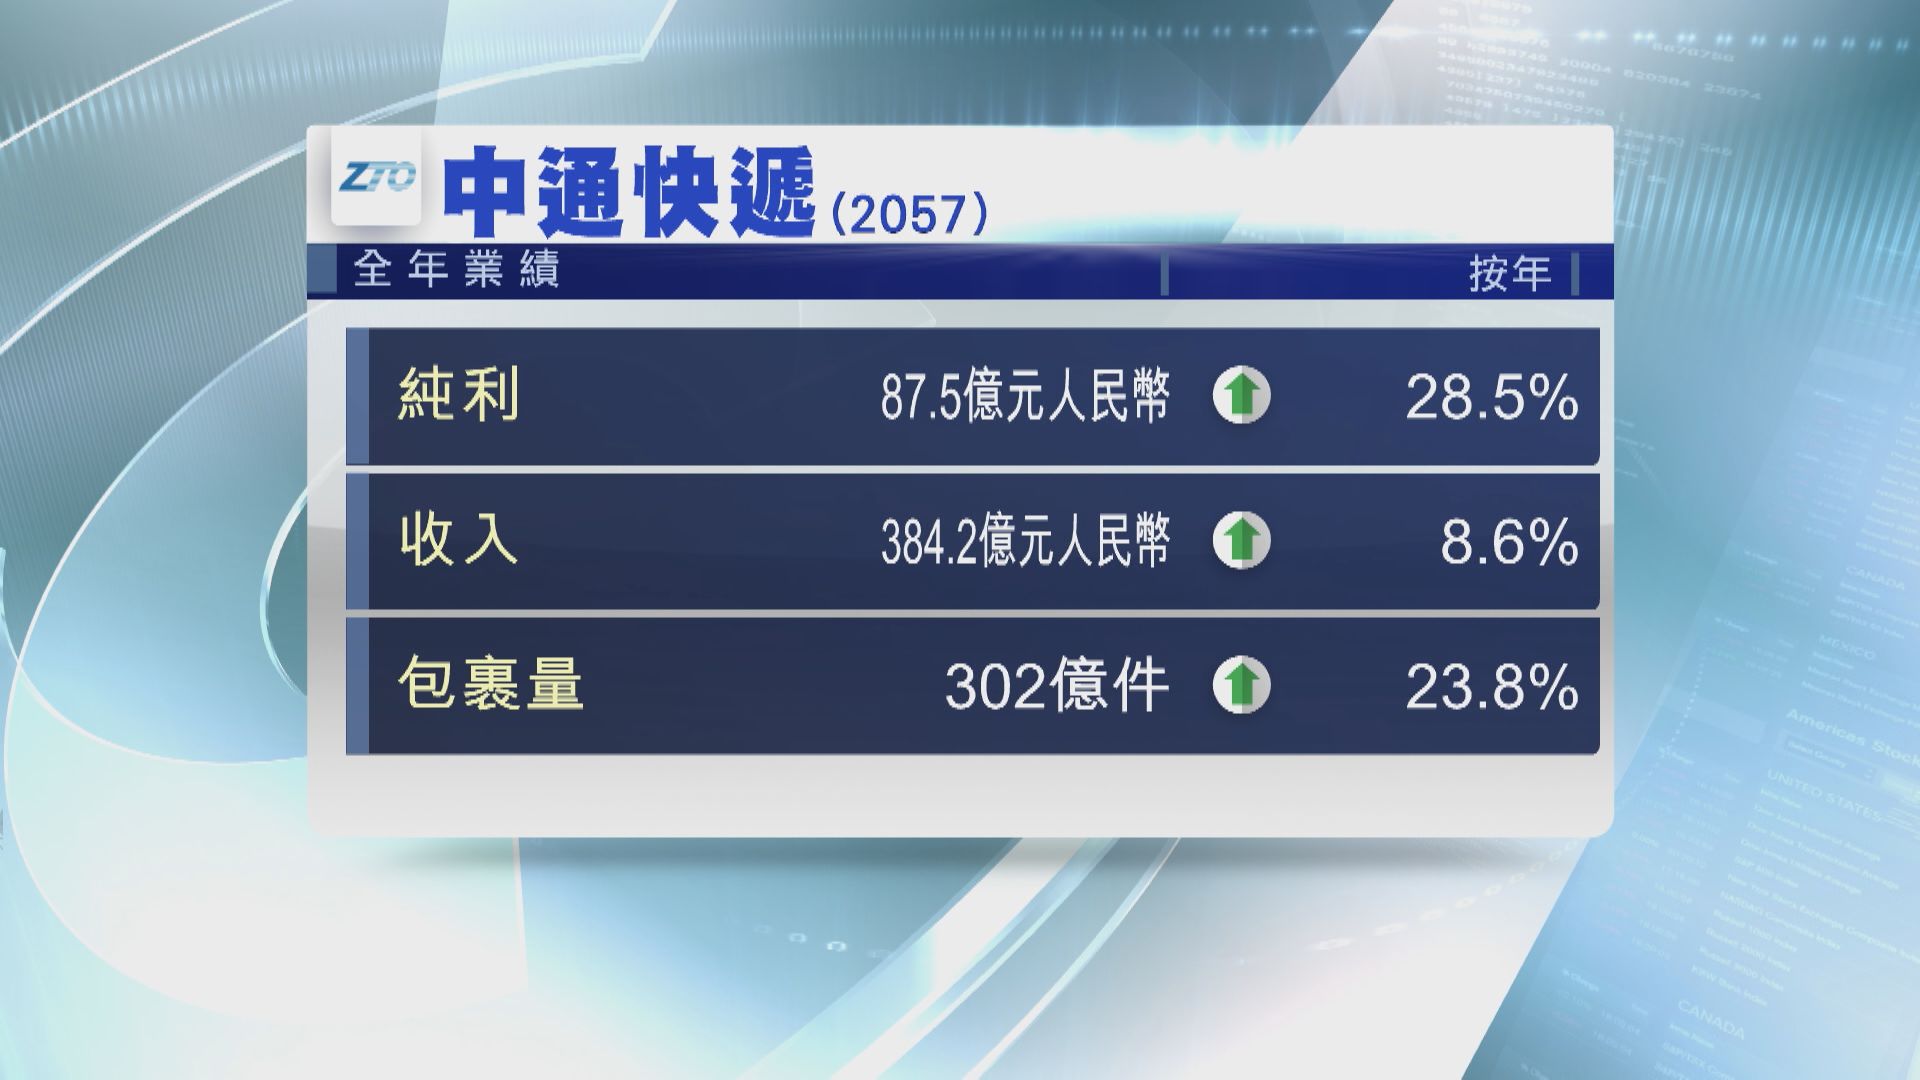 【業績速報】中通快遞去年純利增長28.5%